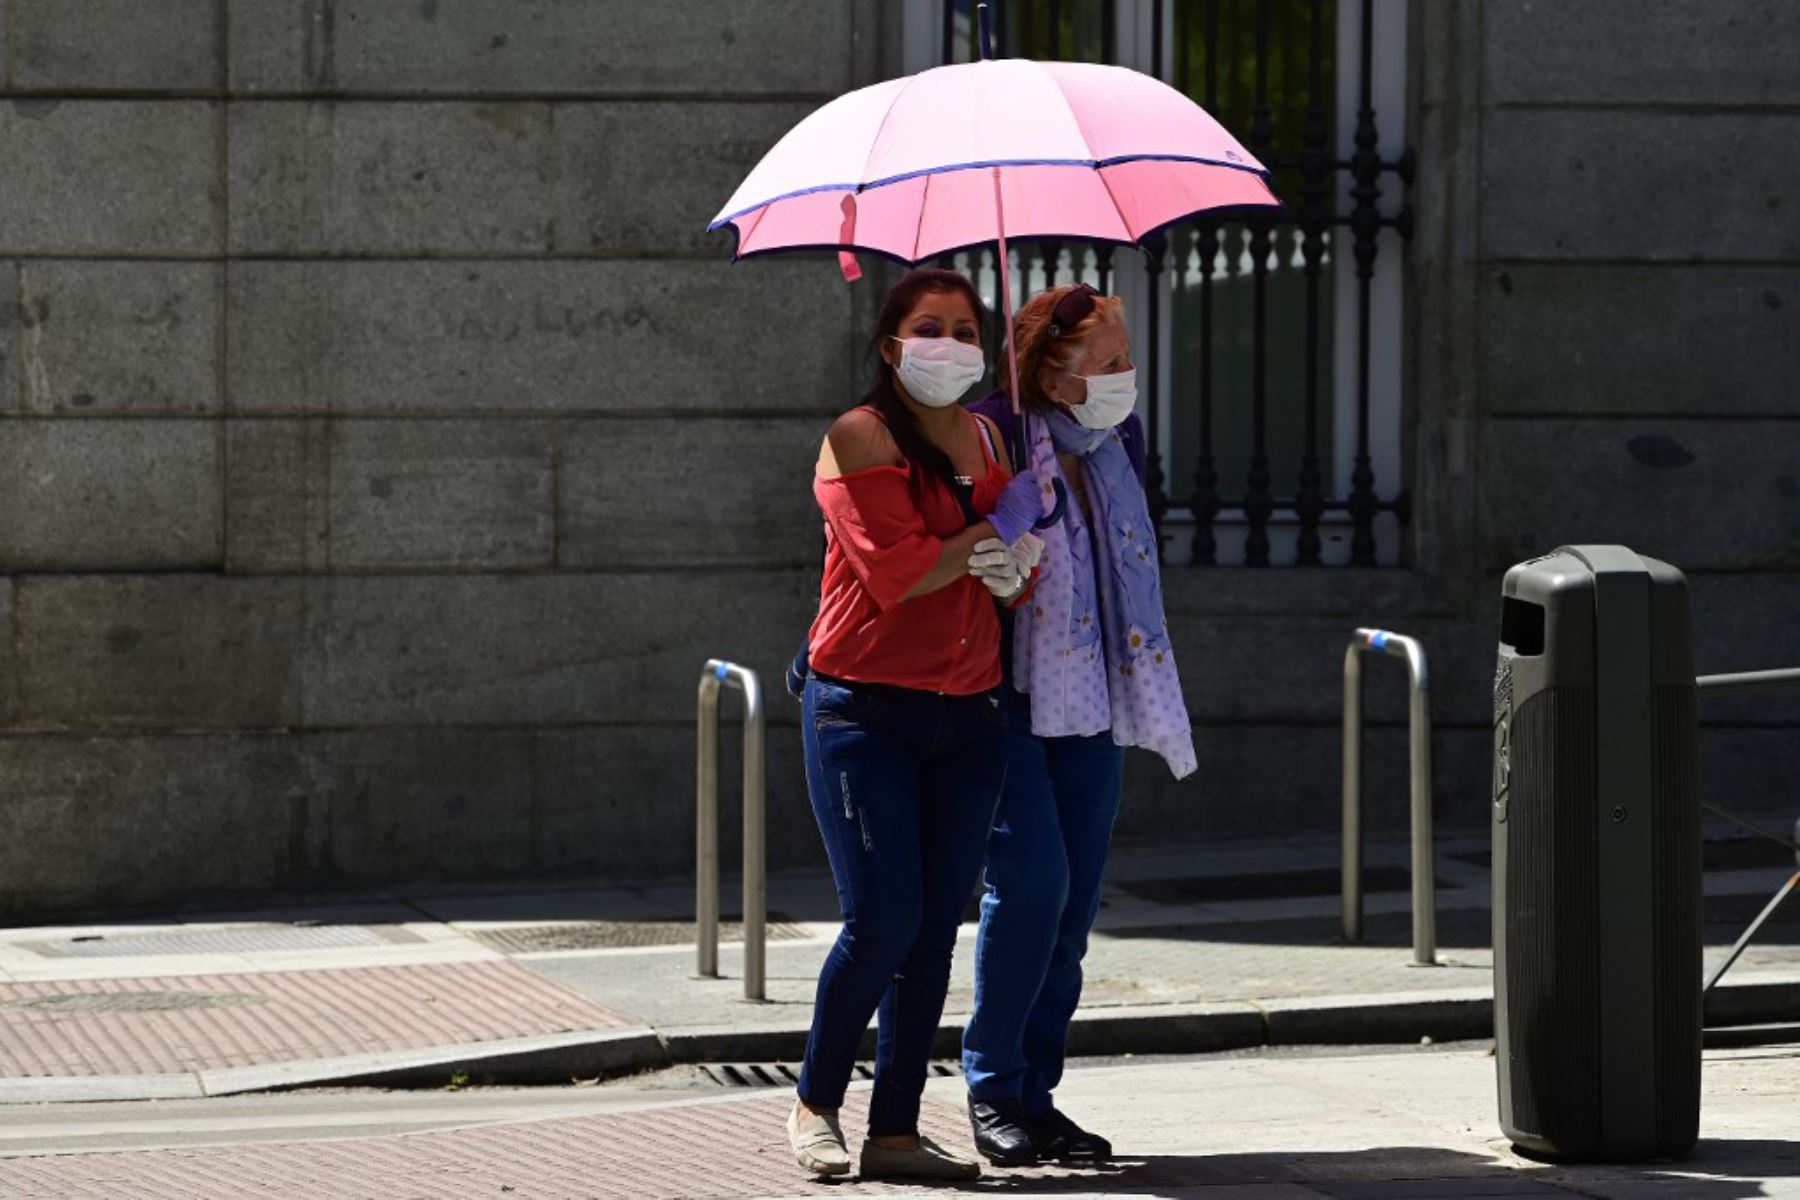 Dos mujeres con máscaras faciales caminan en Madrid , ya que el uso de máscaras se hizo obligatorio en público donde no es posible el distanciamiento social.
Foto: AFP